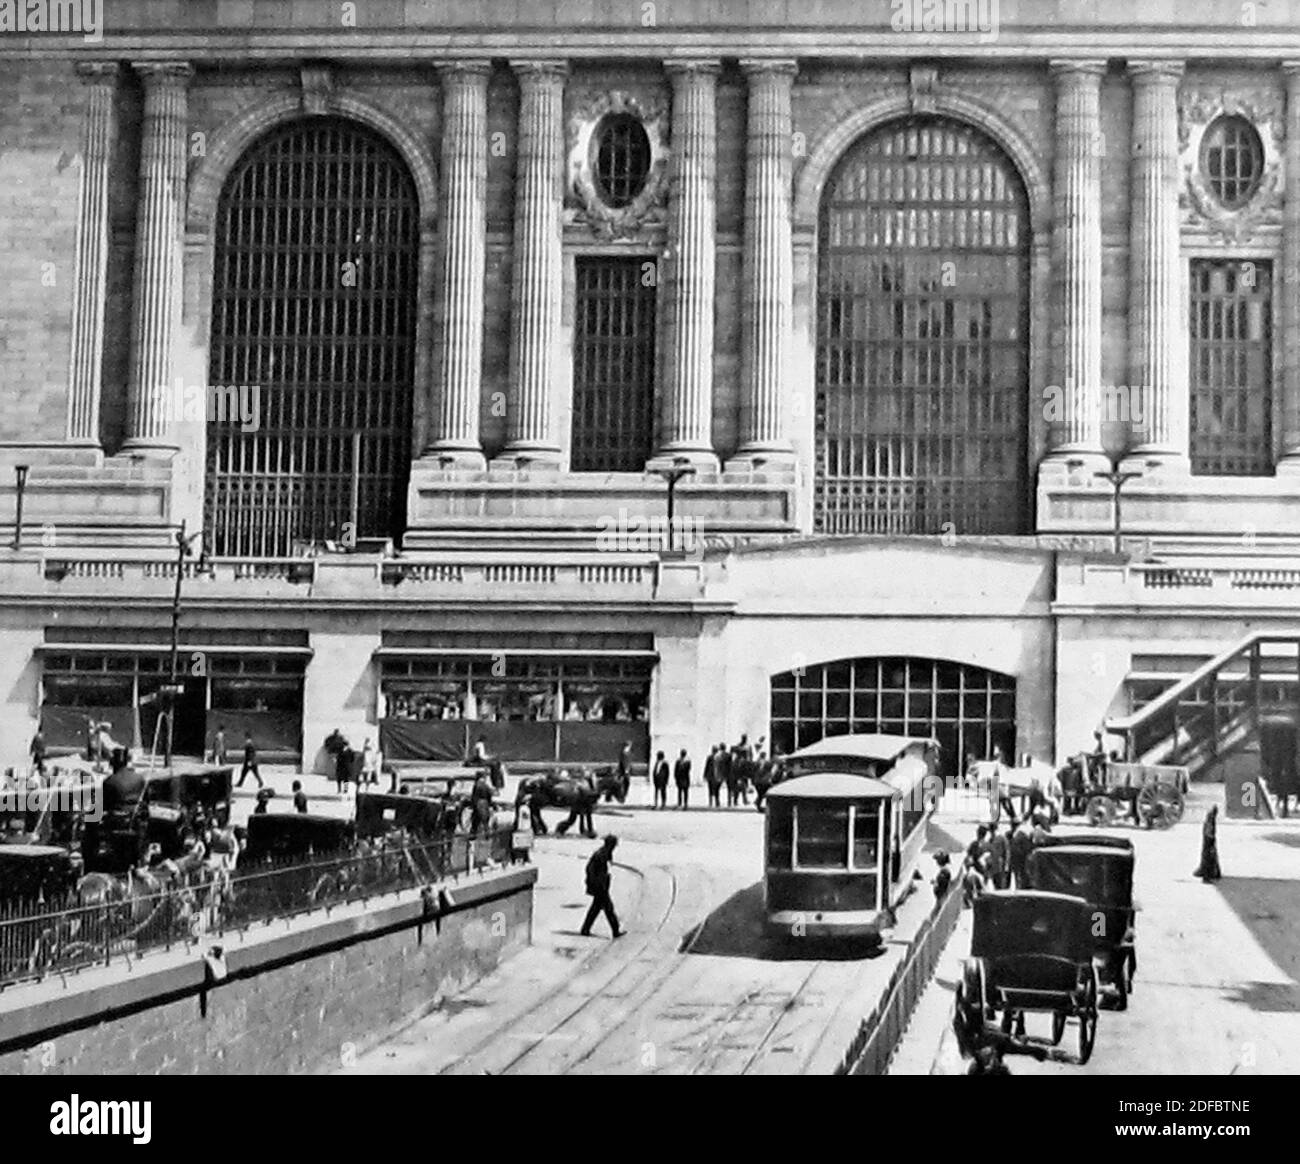 Grand Central Terminal: 1913, Shorpy Old Photos